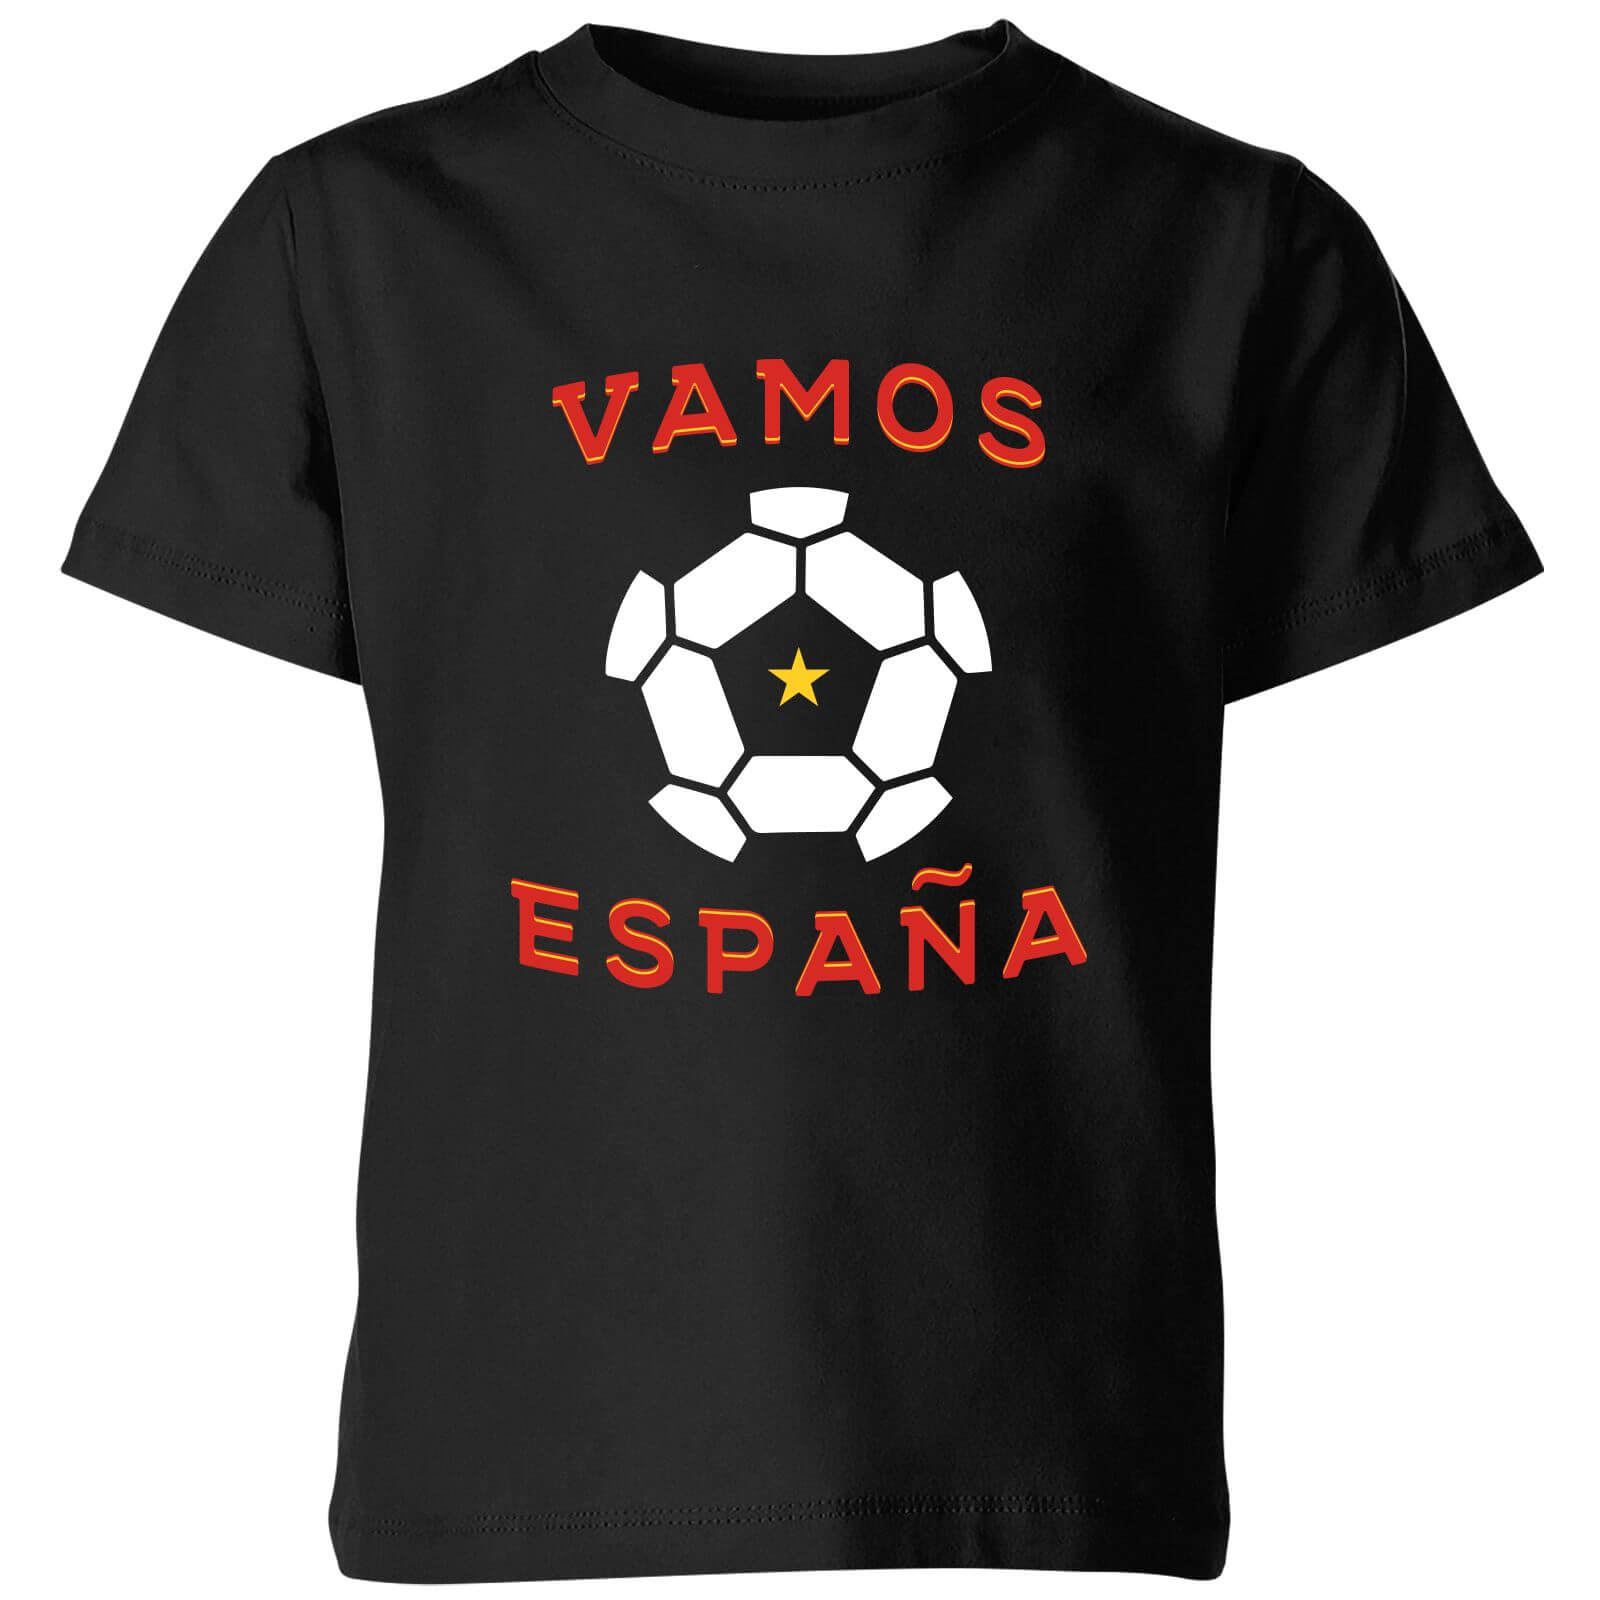 Vamos Espana Kids' T-Shirt - Black - 3-4 Years - Black